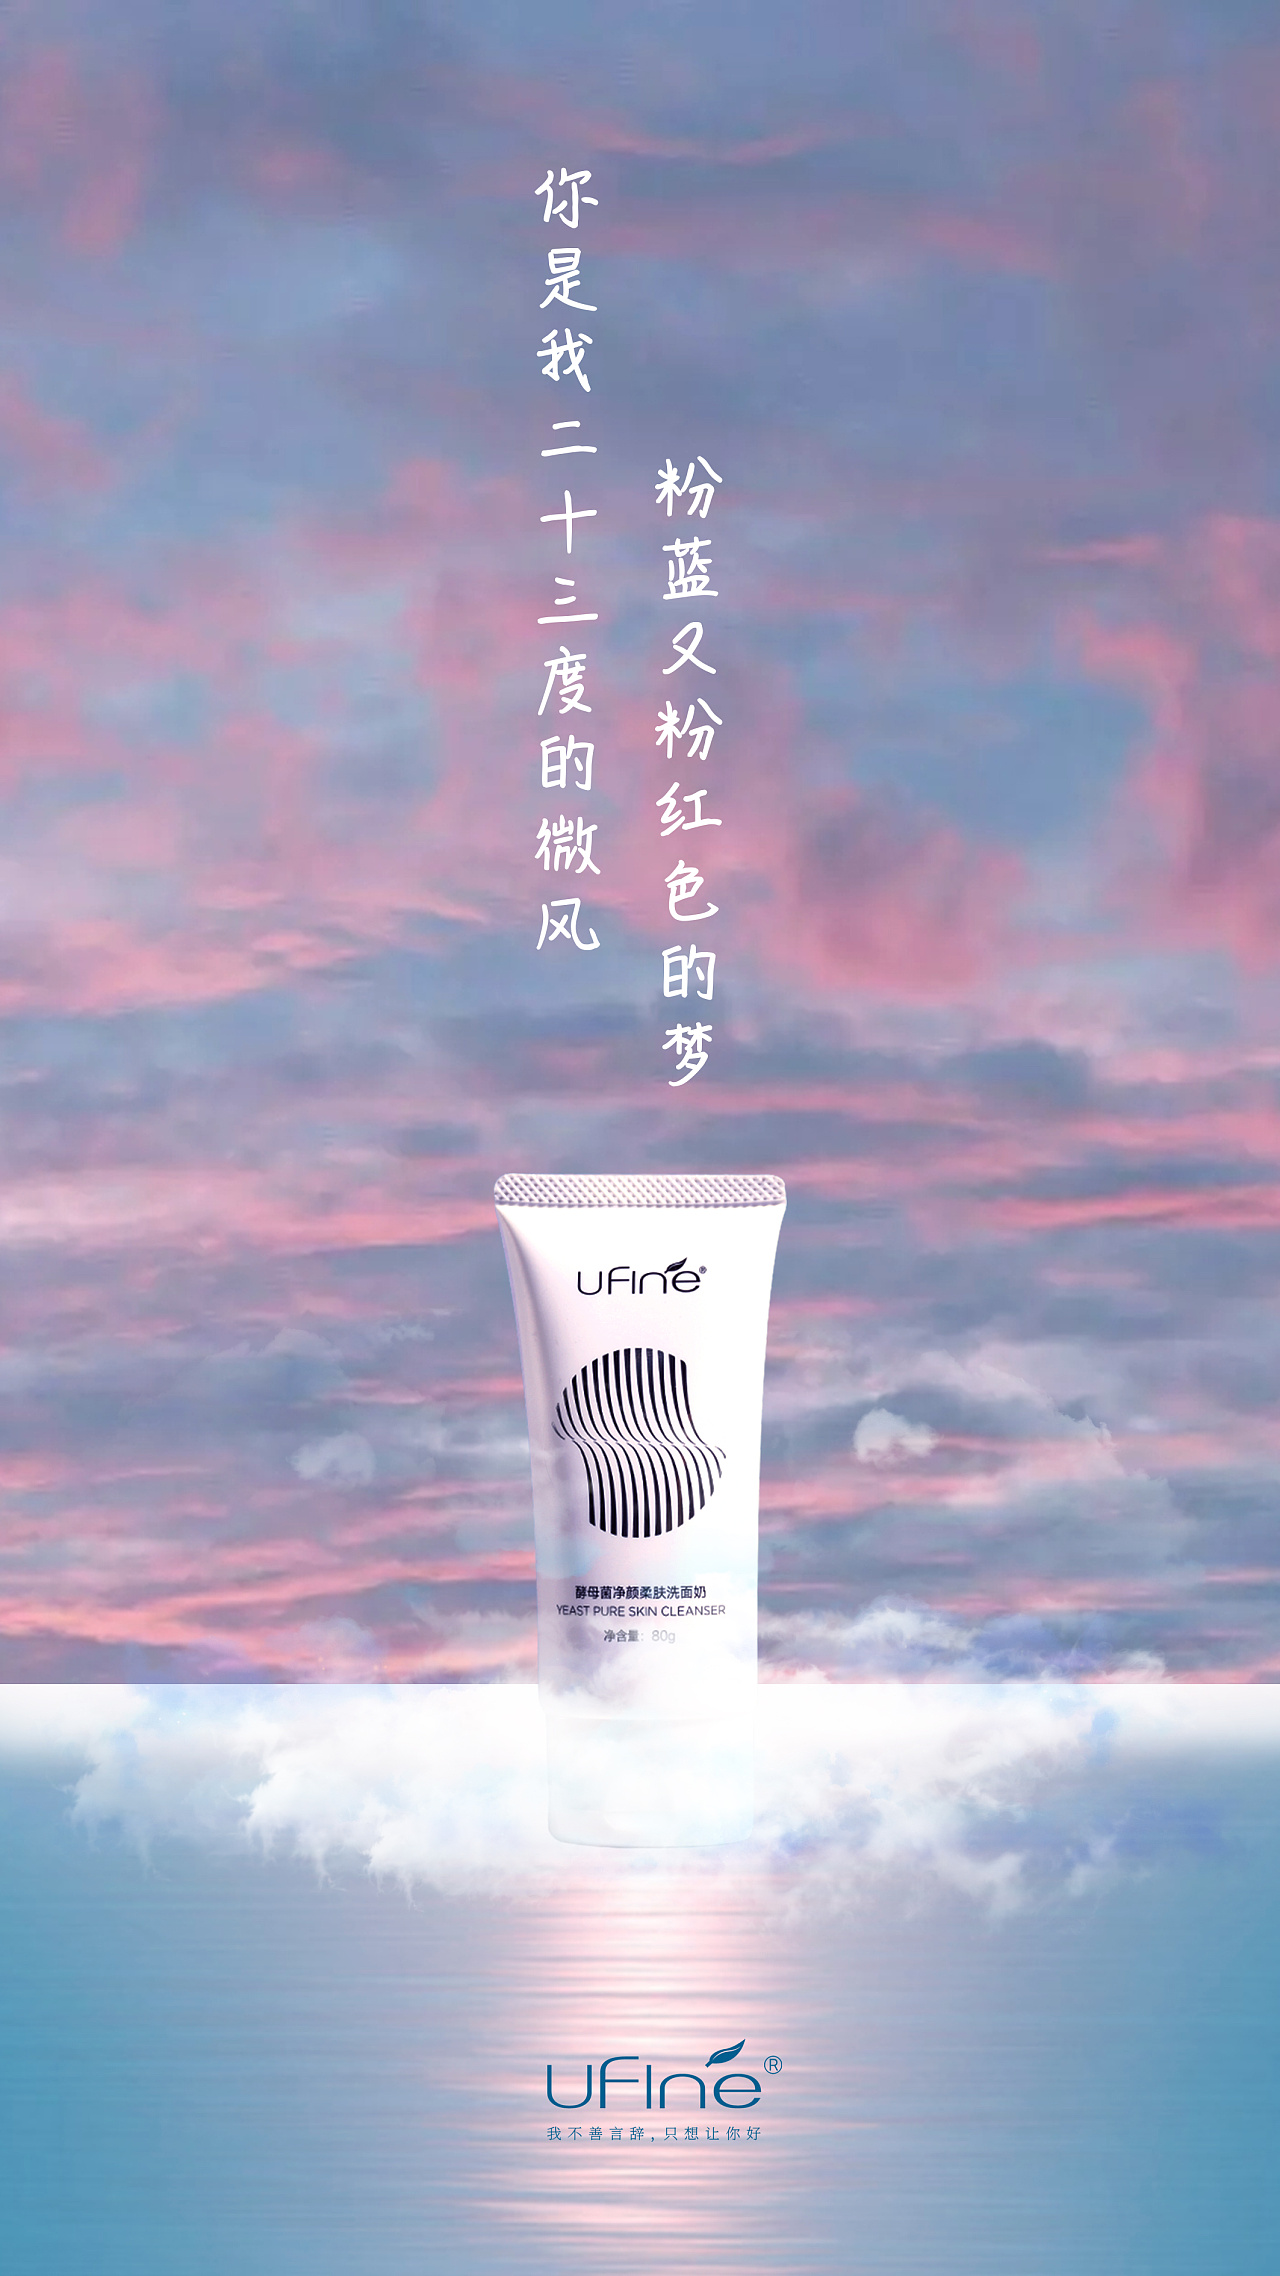 洗面奶创意广告语图片